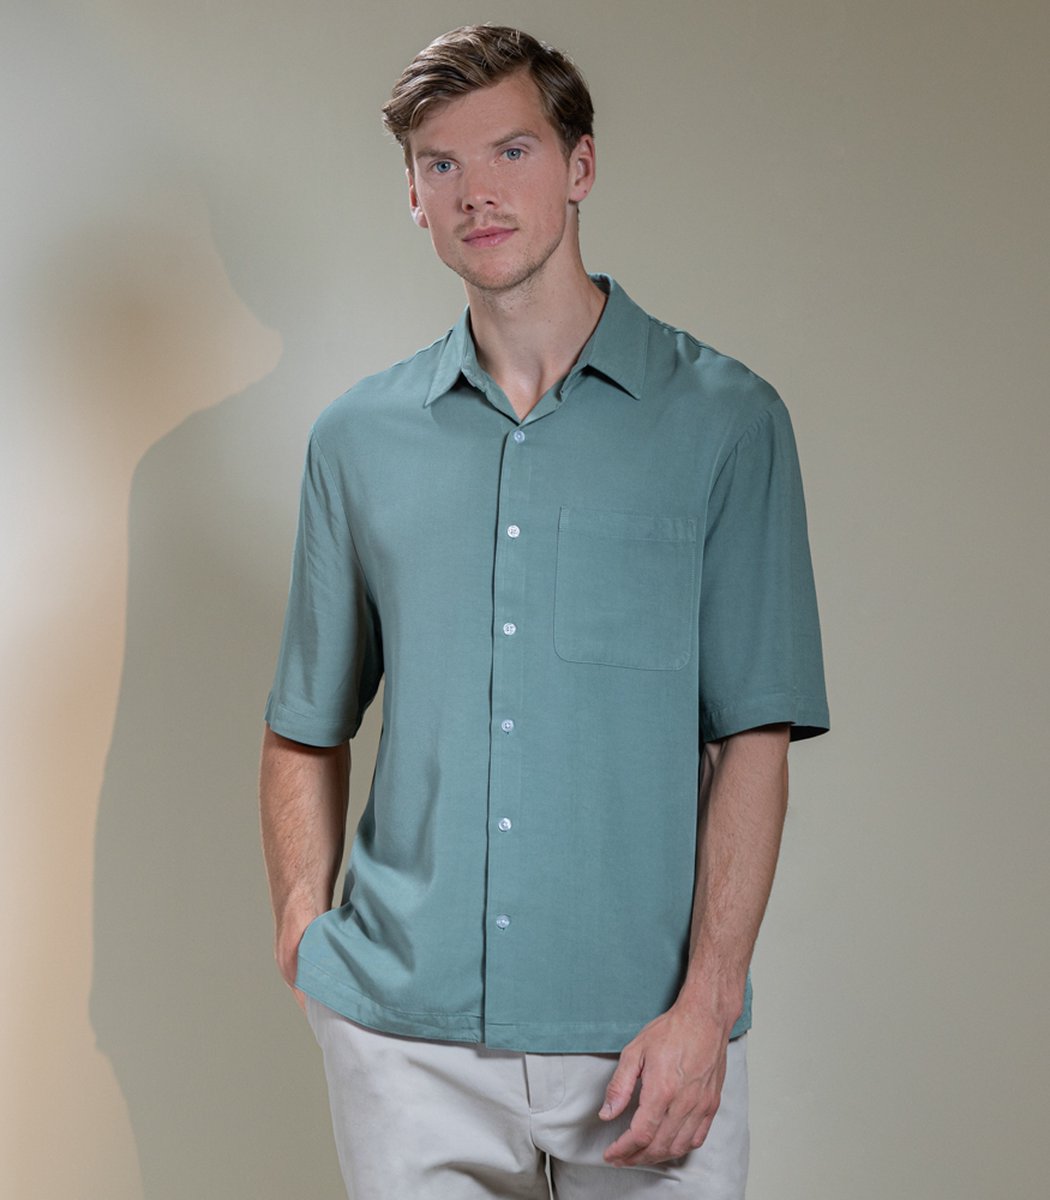 Laurent Vergne - Heren - Bowling Shirt - 100% Viscose - maat XS - Slim fit